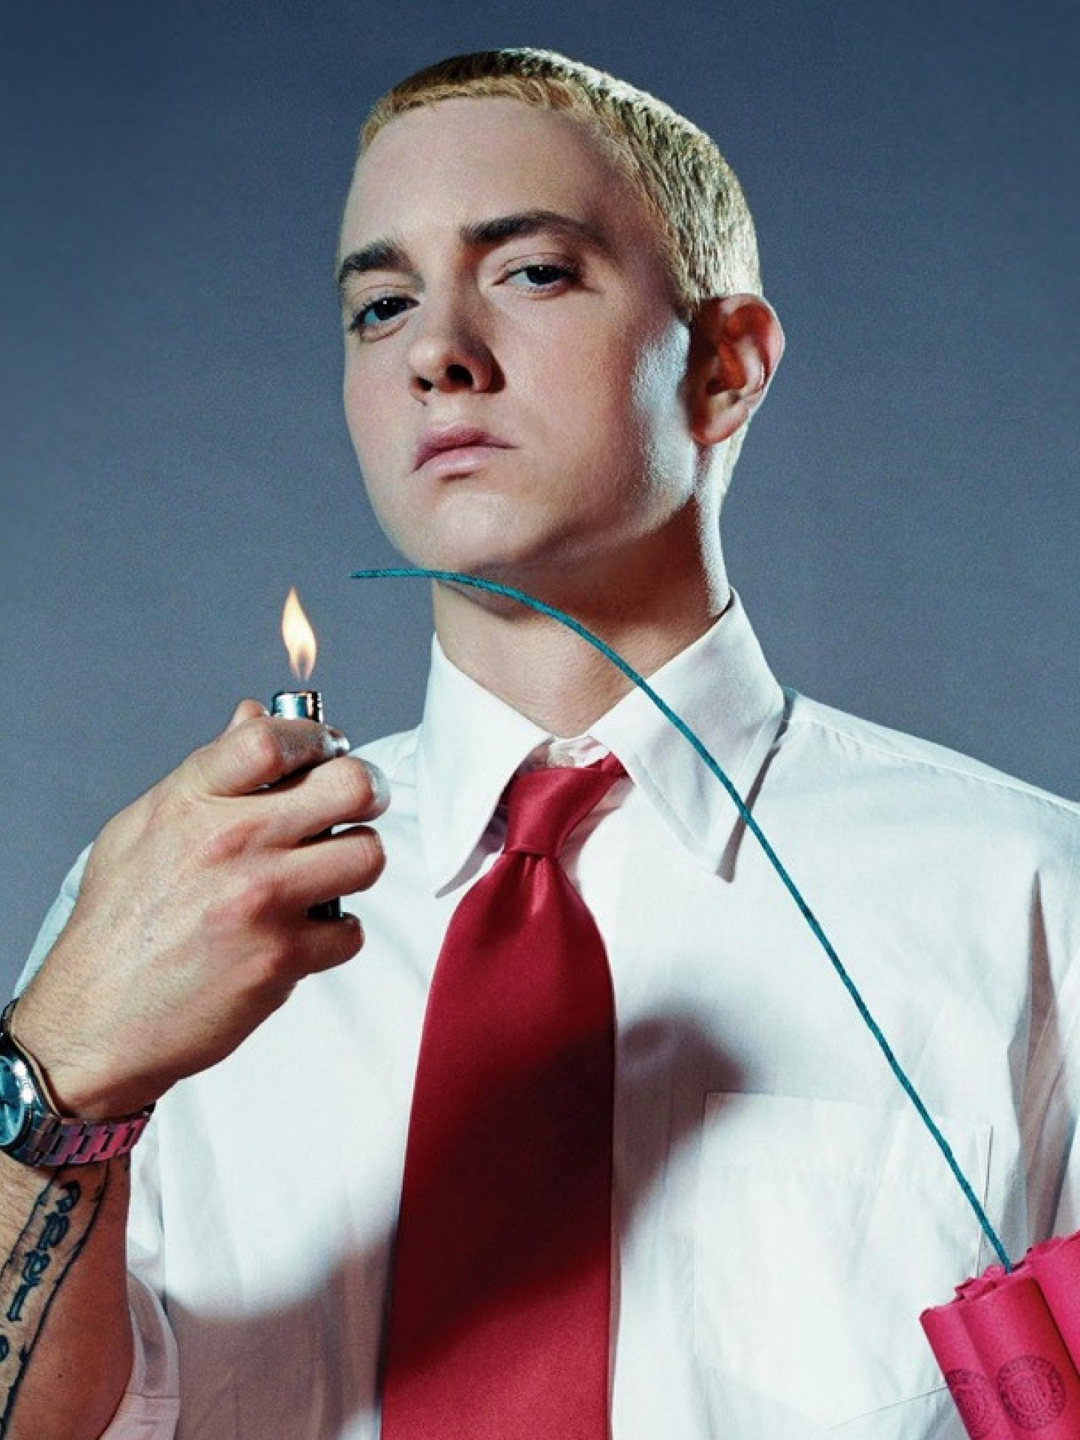 Eminem current look